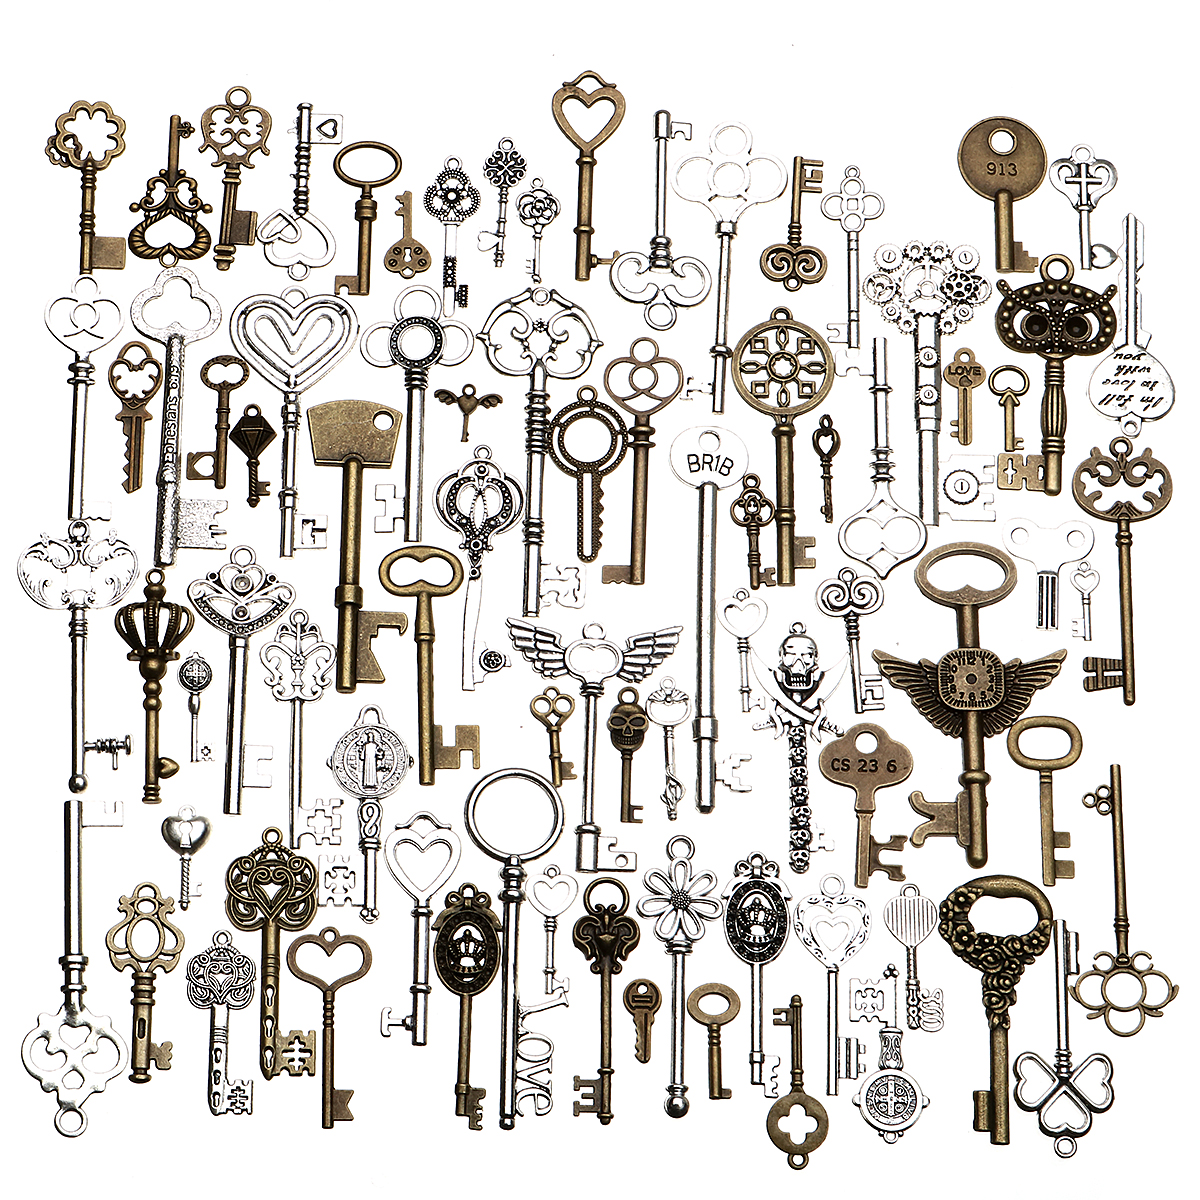 

80pcs Antique Vtg old look Ornate Skeleton Keys Lot Pendant Fancy Heart Decorations